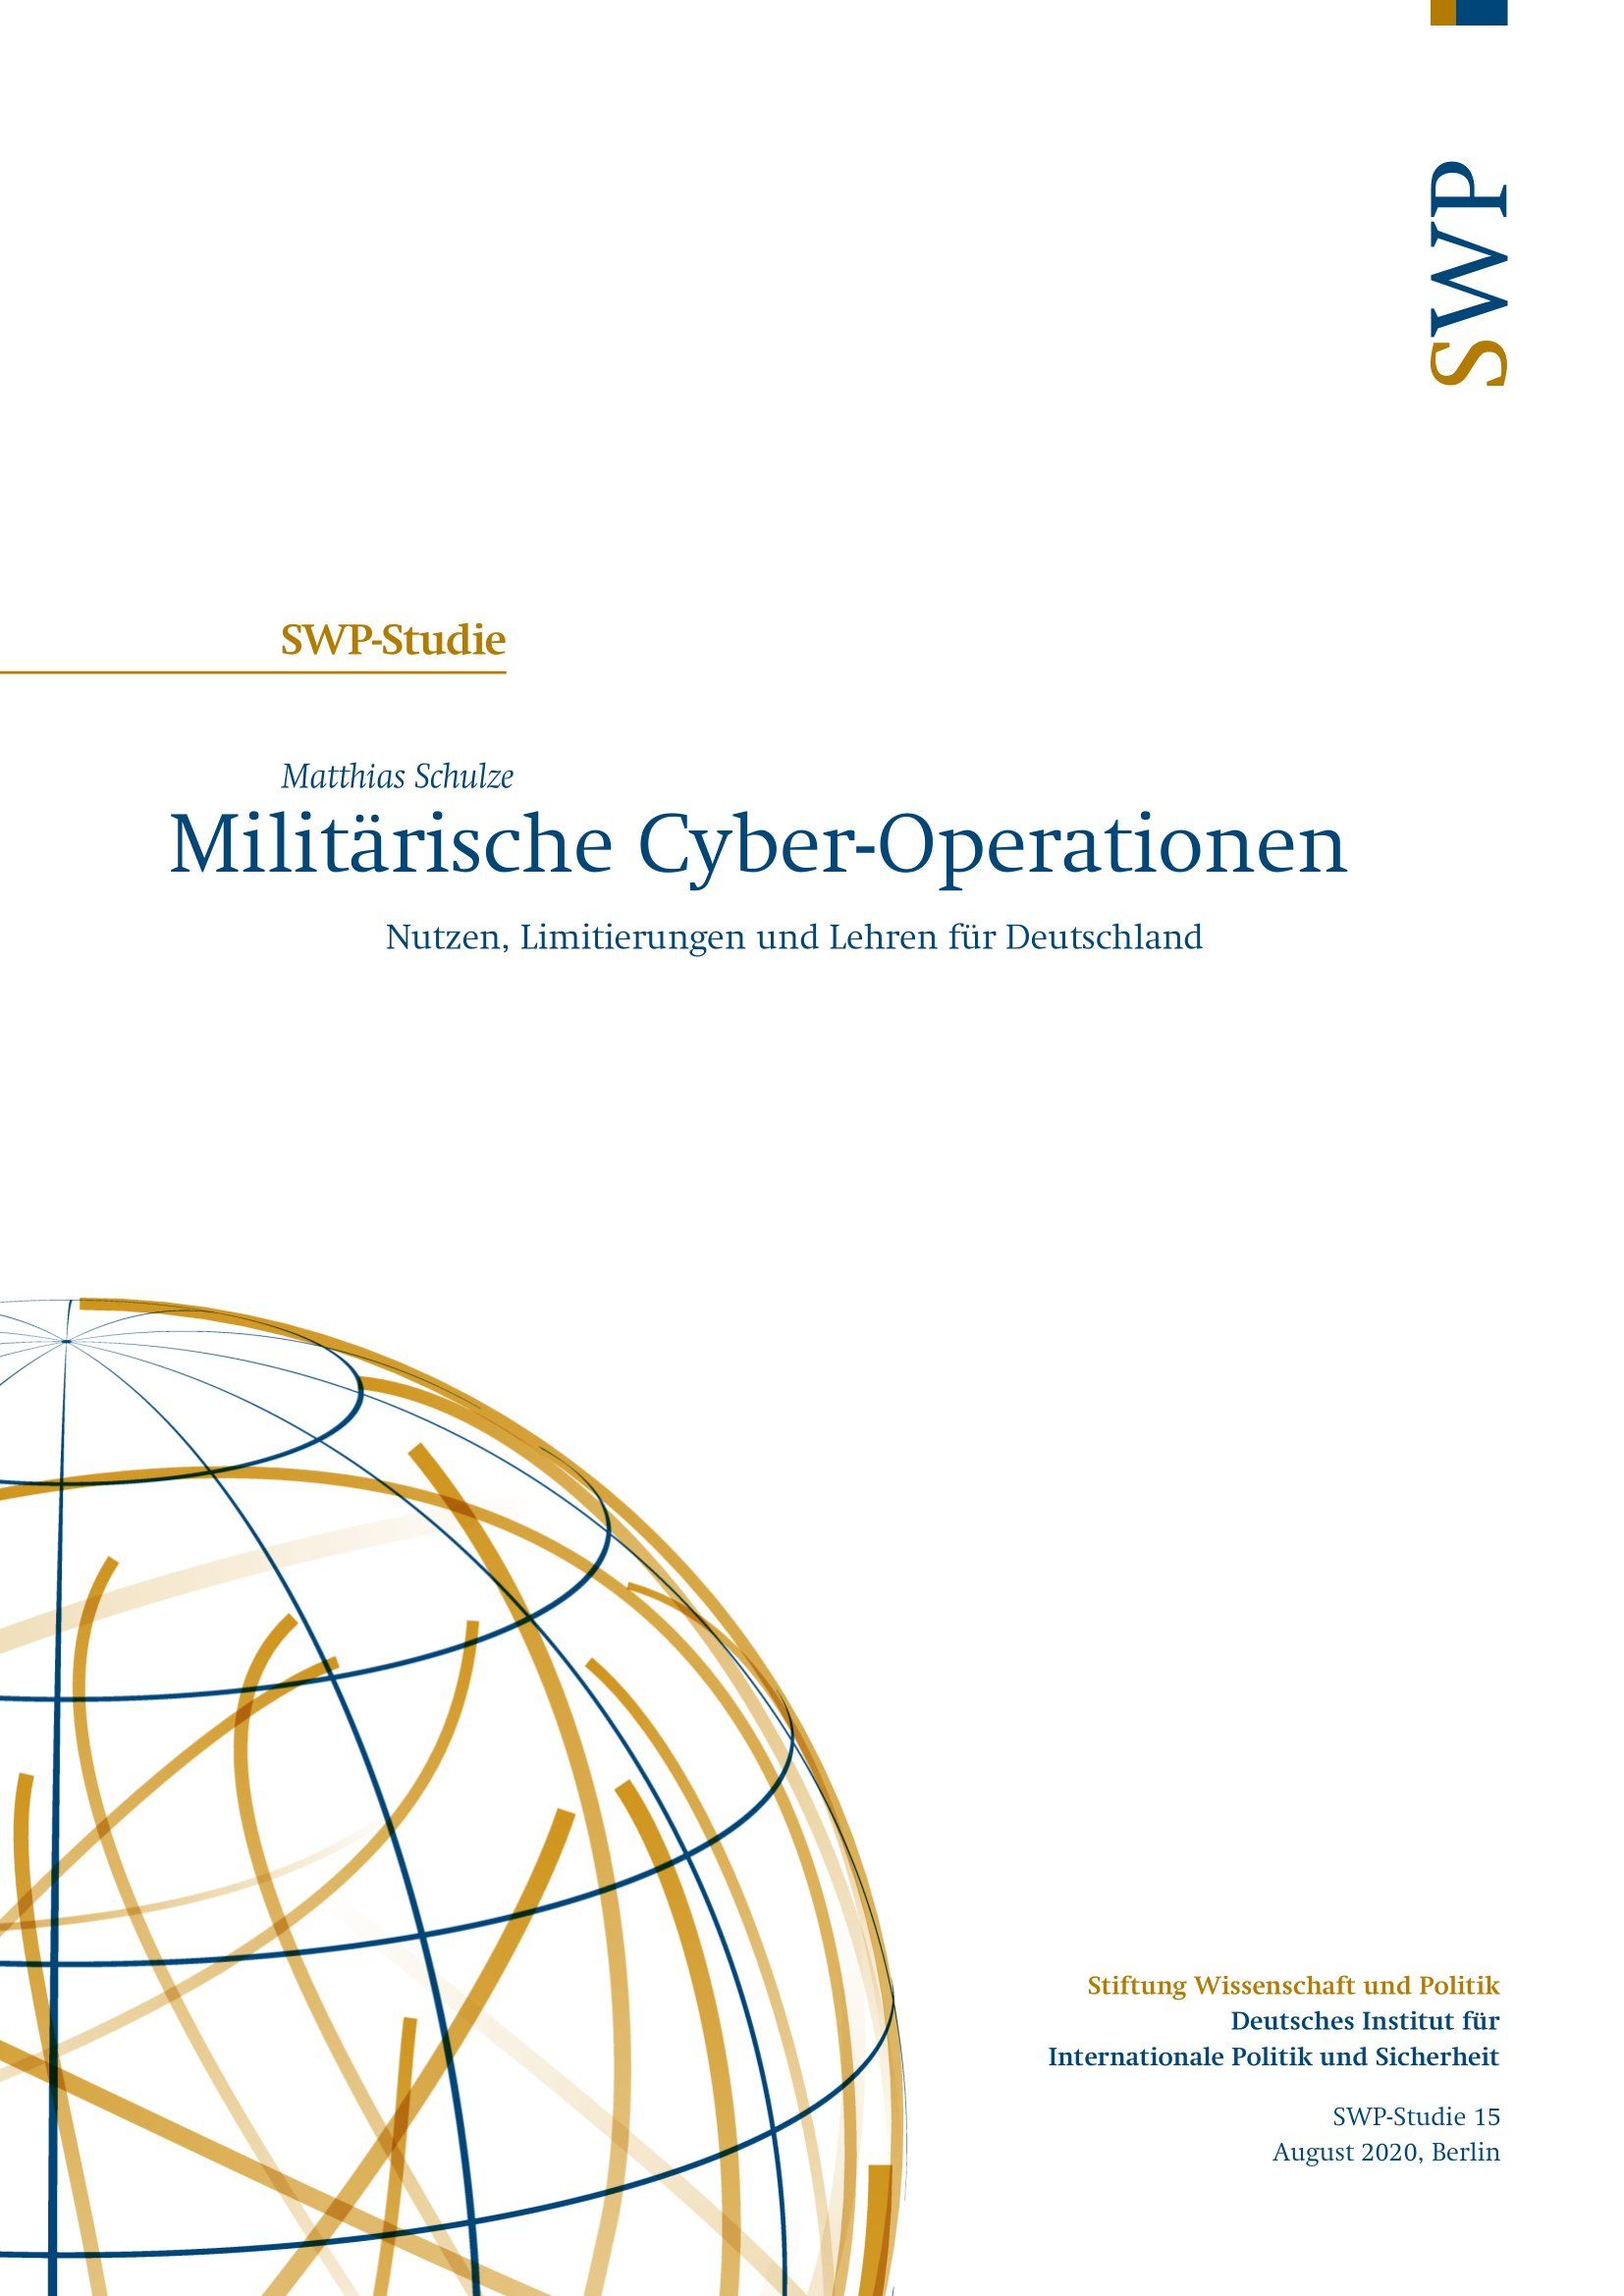 Militärische Cyber-Operationen - Nutzen, Limitierungen und Lehren für Deutschland